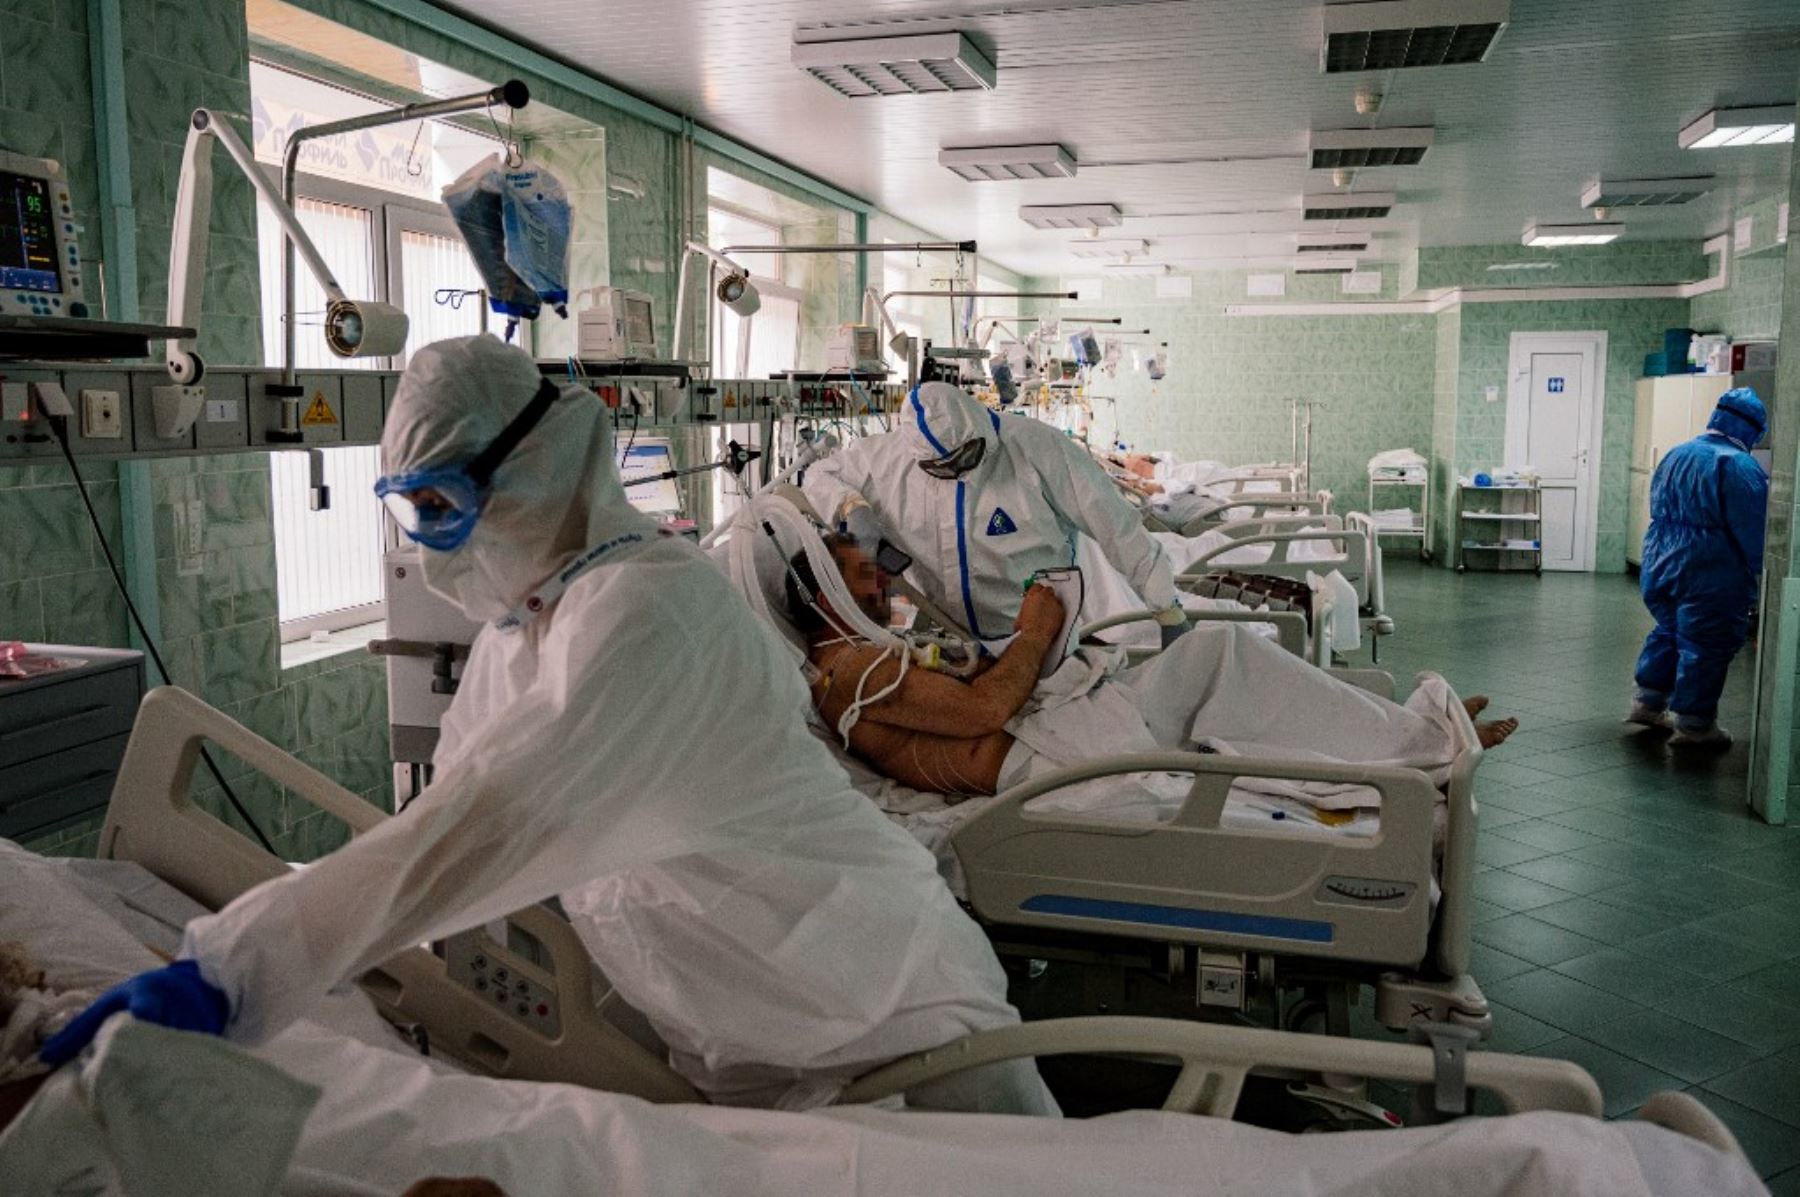 El doctor Dmitry Cheboksarov con equipo de protección personal trabaja en la unidad de cuidados intensivos para pacientes con coronavirus COVID-19. Foto: AFP